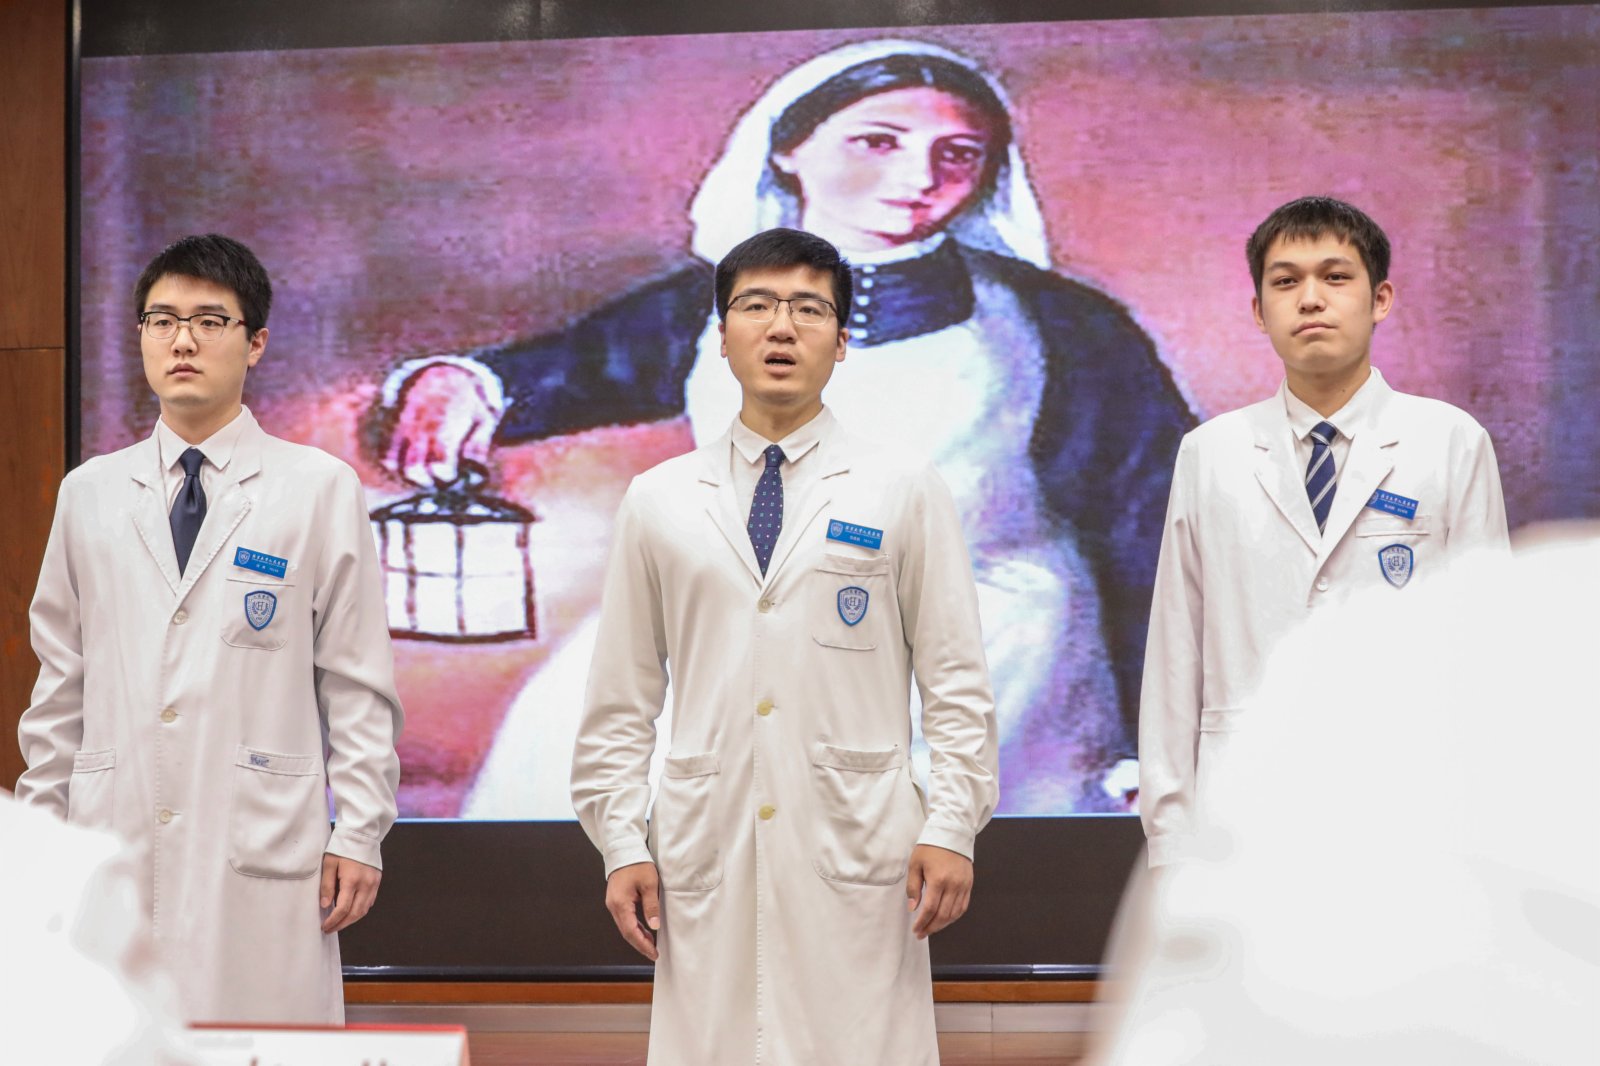 北京大學人民醫院的男護士代表在慶祝活動上演講。